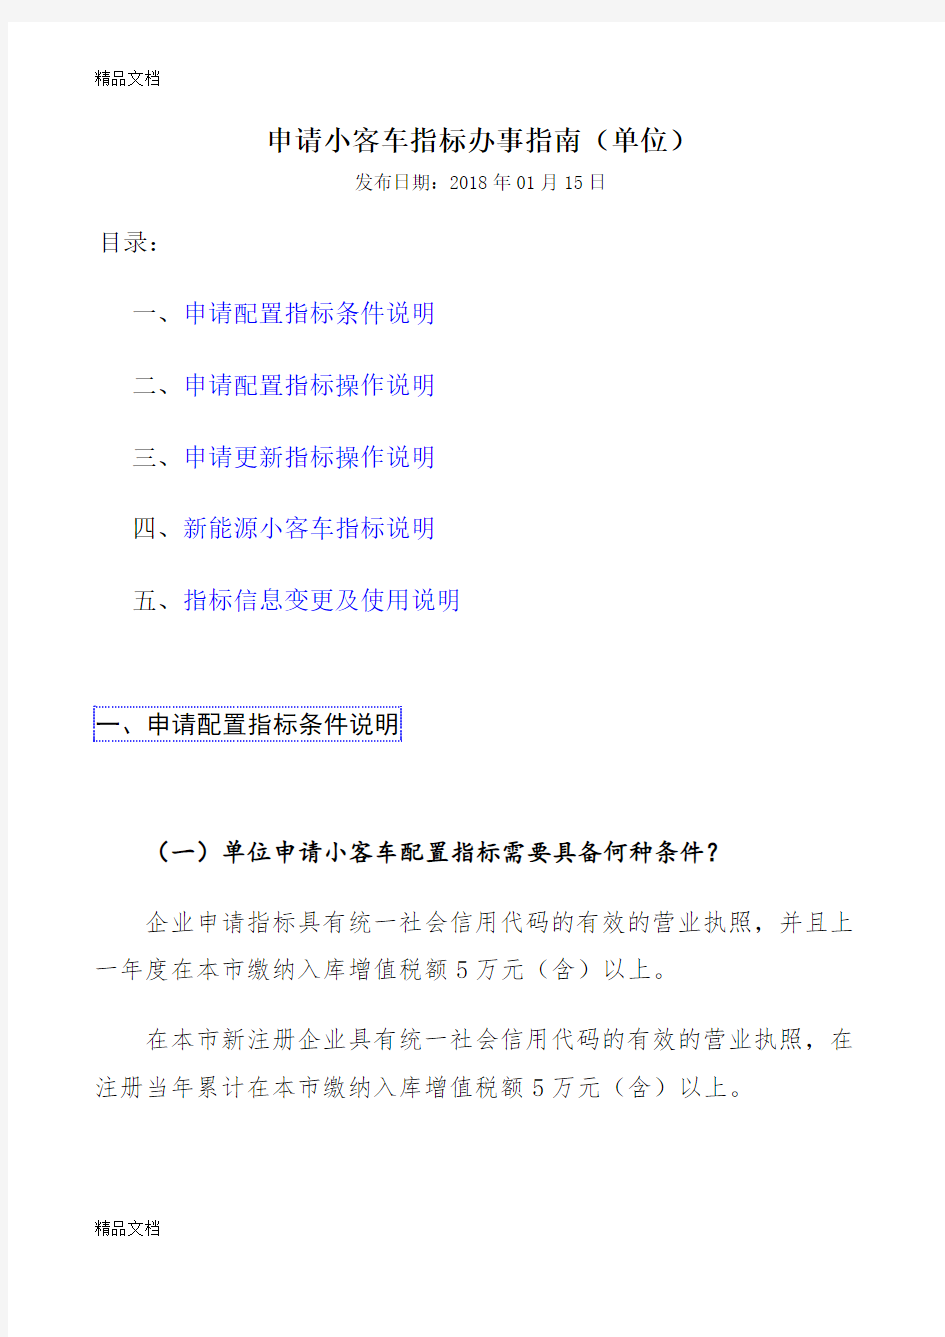 最新北京申请小客车指标办事指南(单位)资料